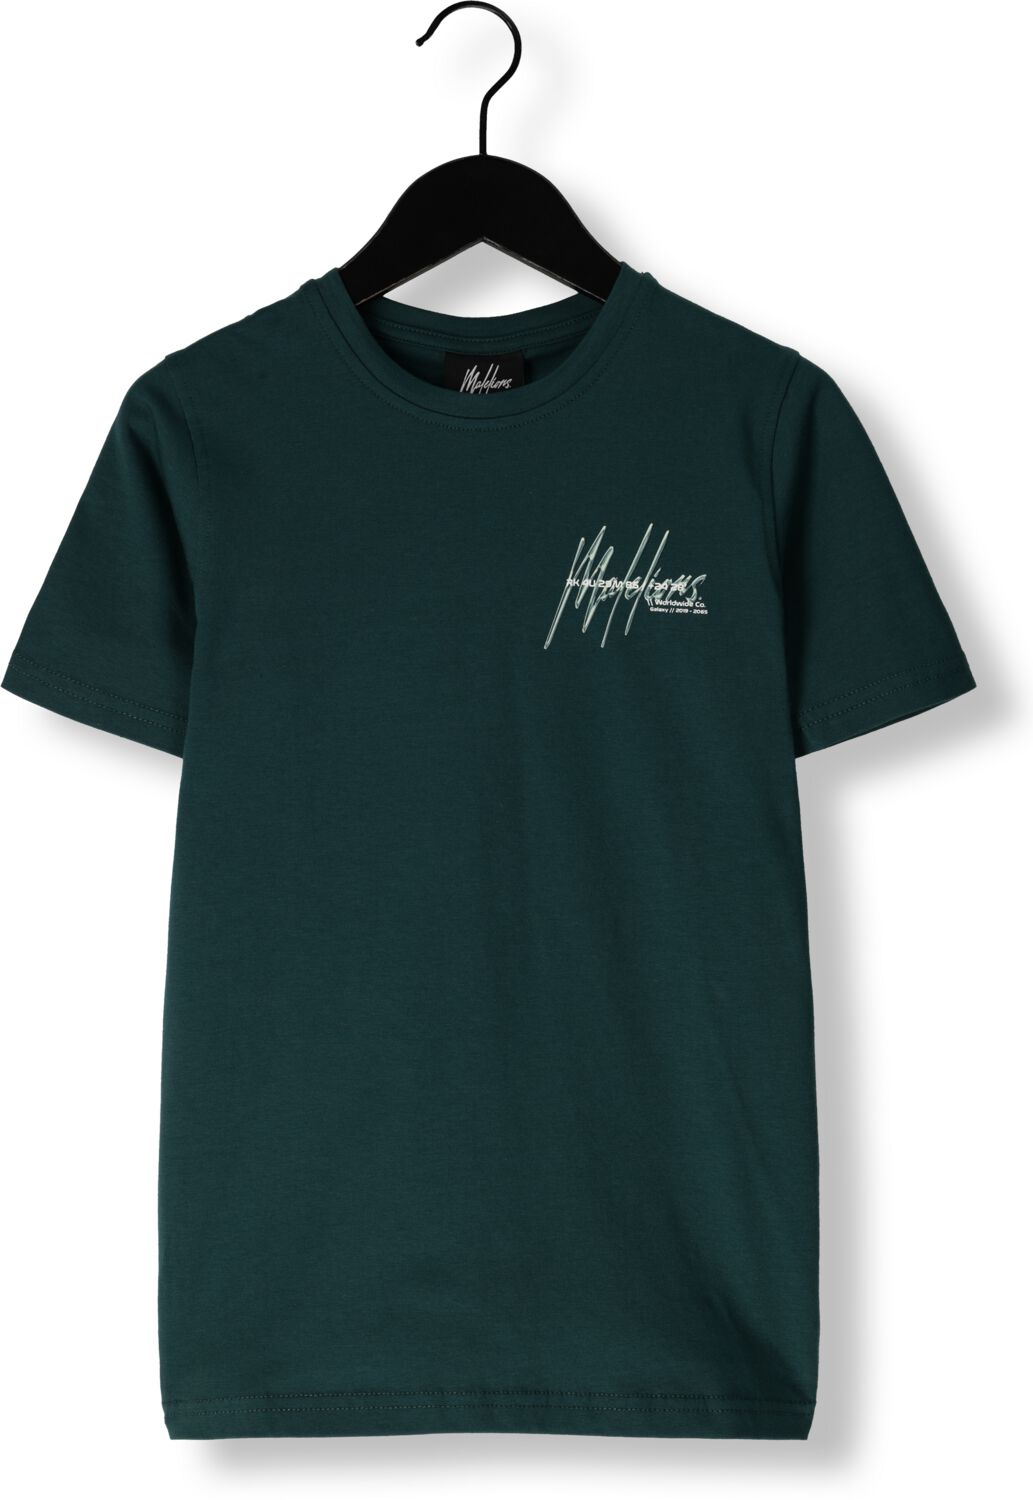 Malelions T-shirt Space met logo groen Jongens Stretchkatoen Ronde hals 164